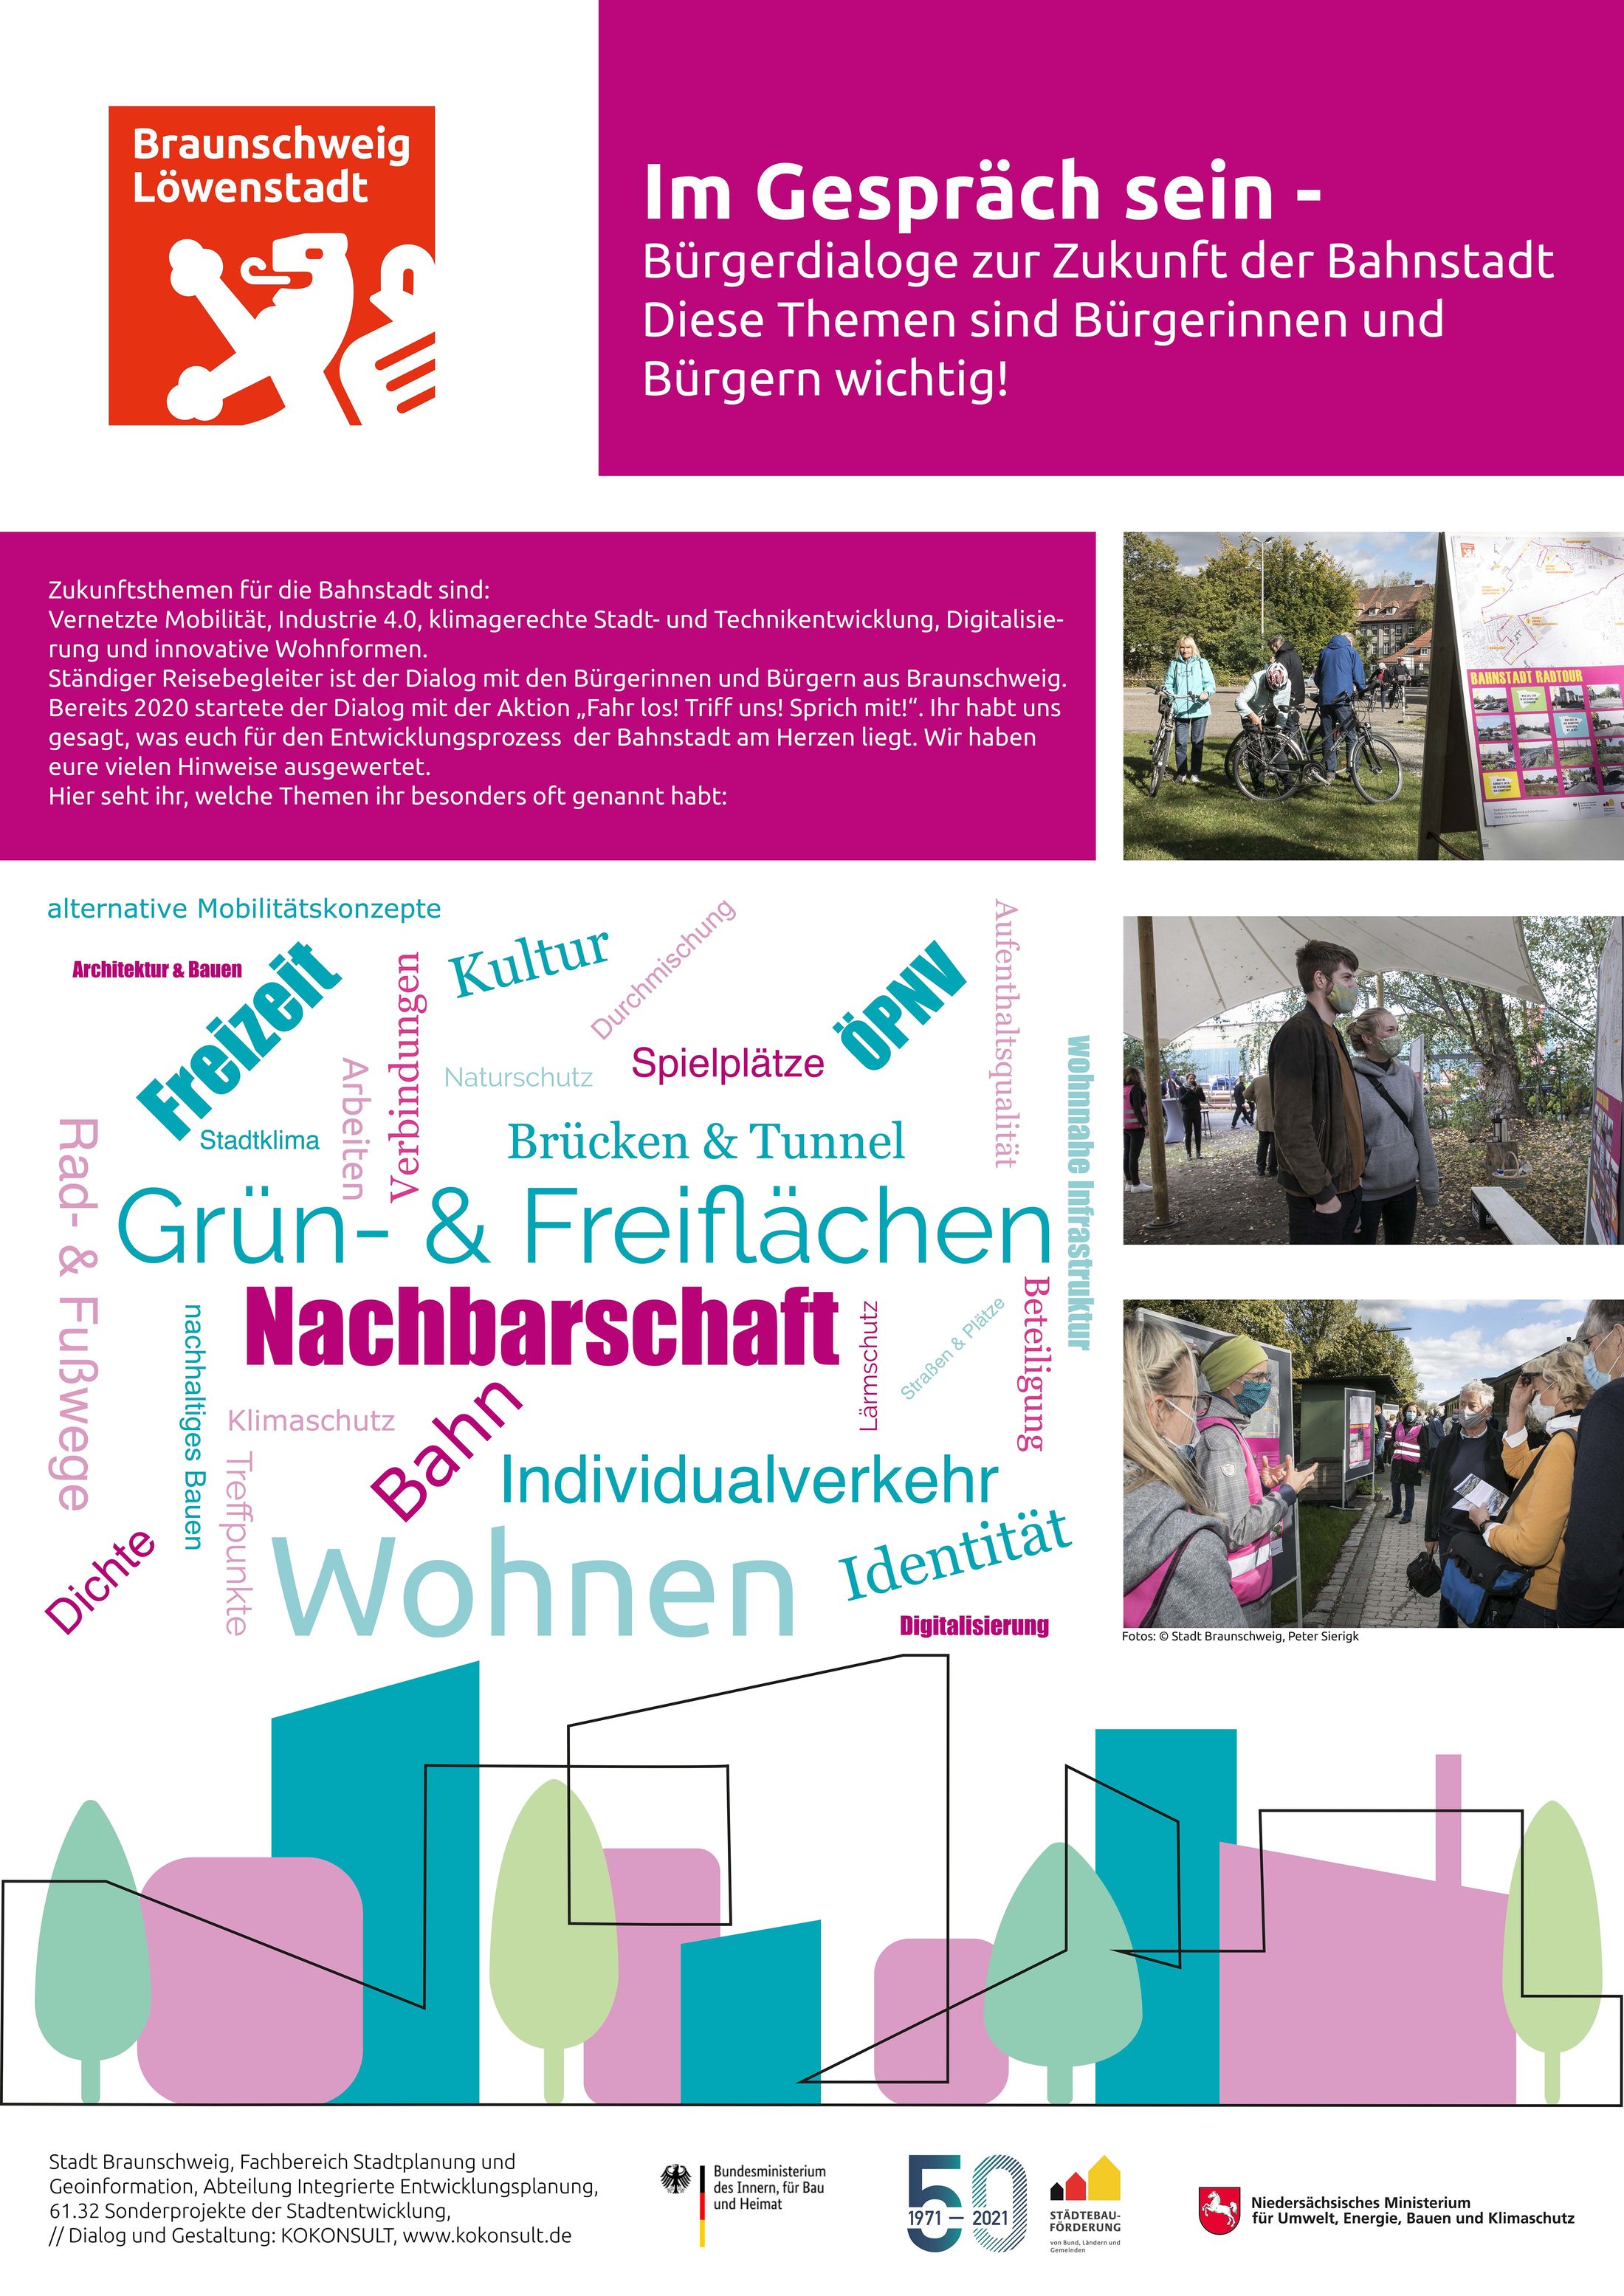 Plakat "Im Gespräch sein - Bürgerdialoge zur Zukunft der Bahnstadt - Diese Themen sind Bürgerinnen und Bürgern wichtig!" (Wird bei Klick vergrößert)